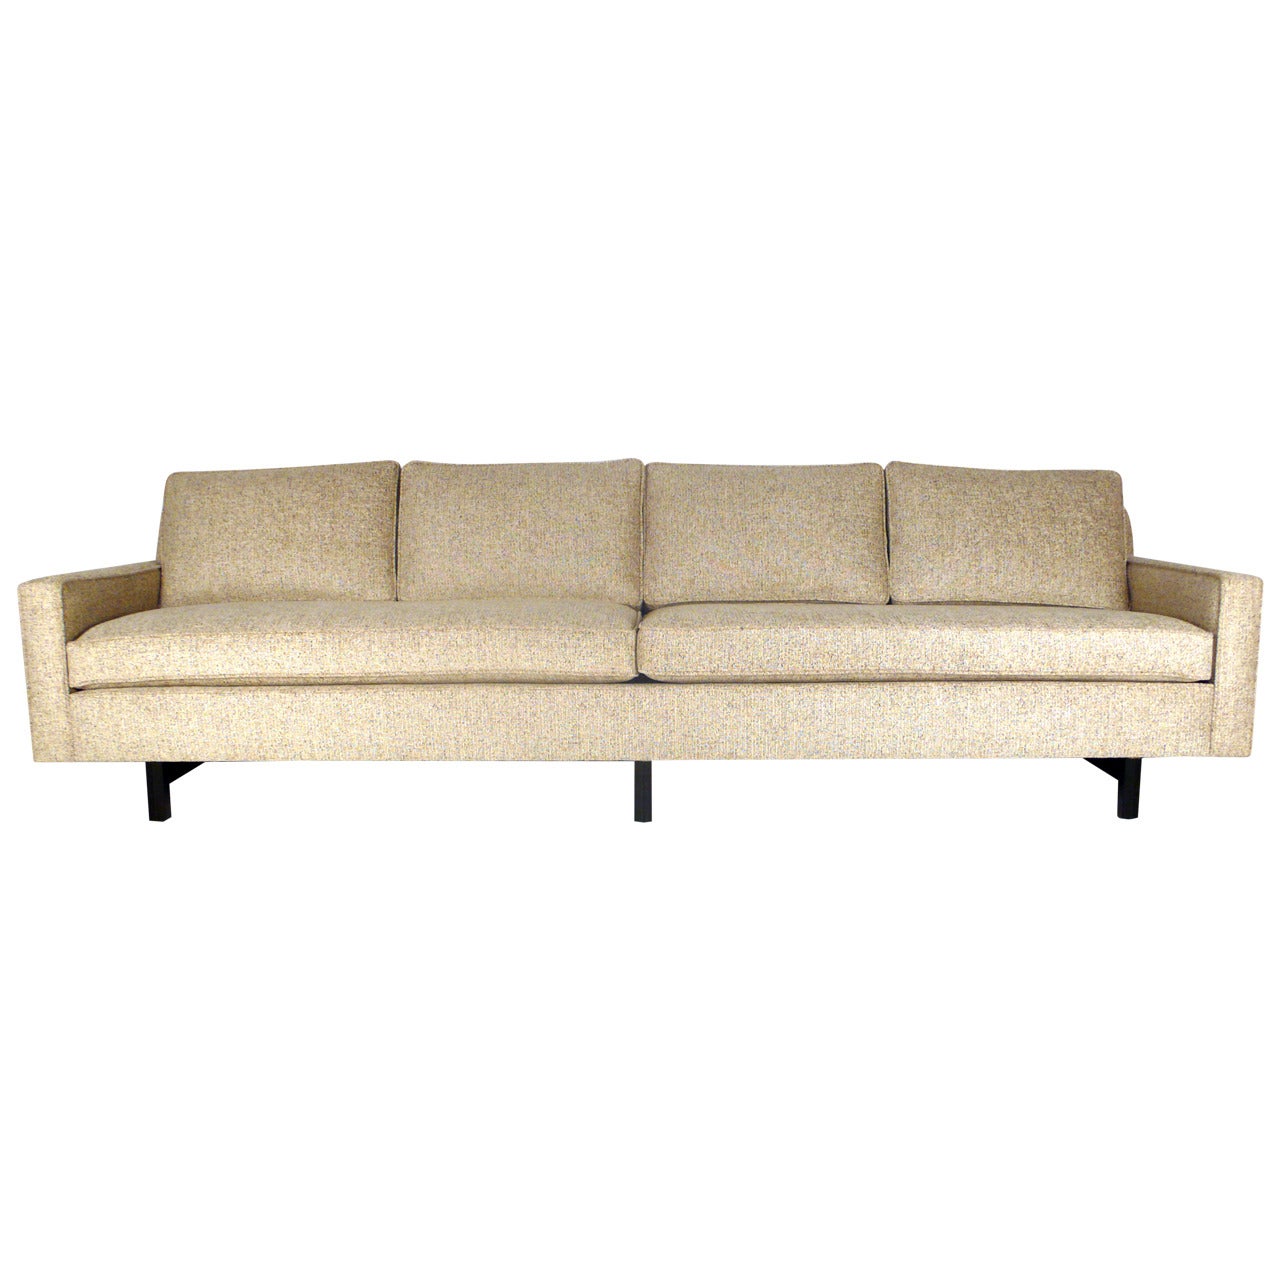 Sofa Designed by Edward Wormley for Dunbar